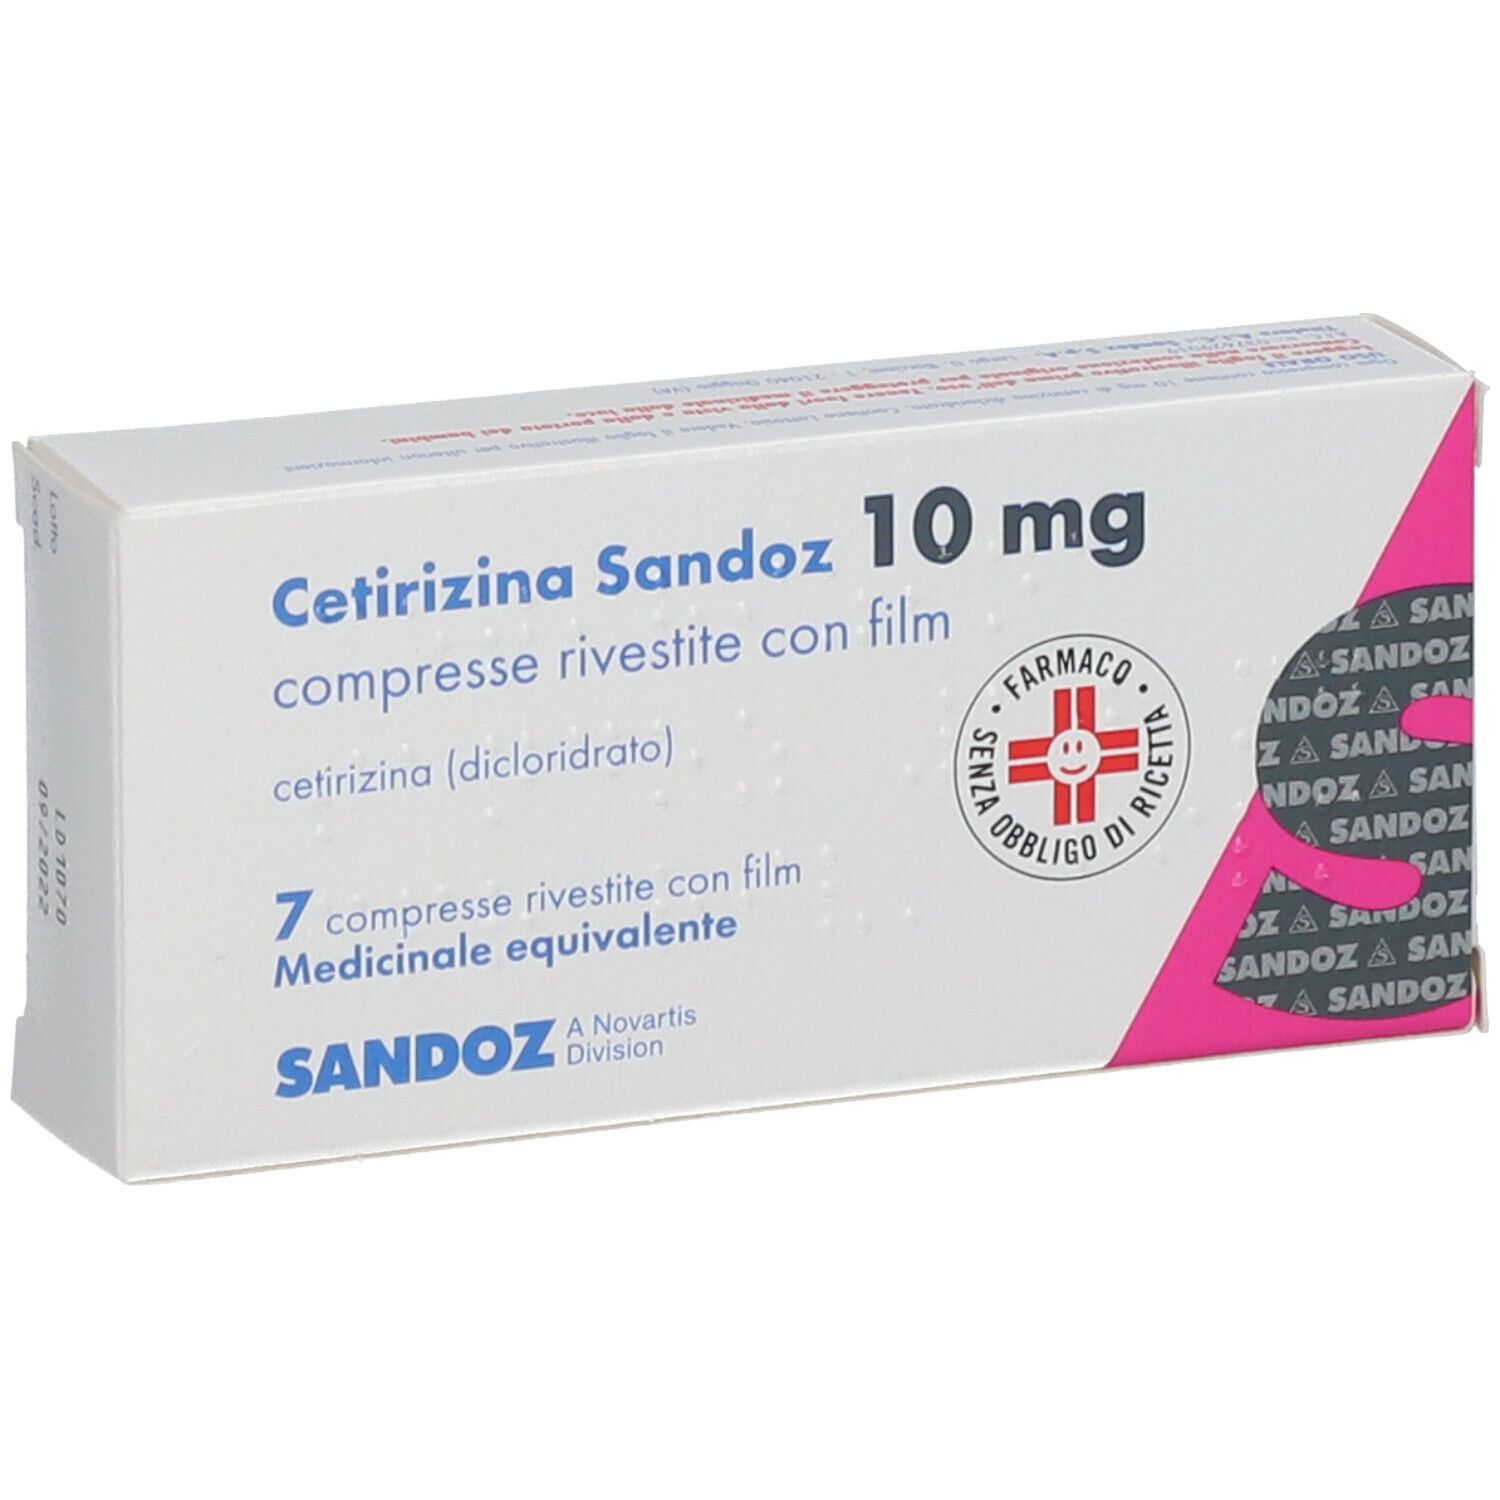 Cetirizina Sandoz 10 mg